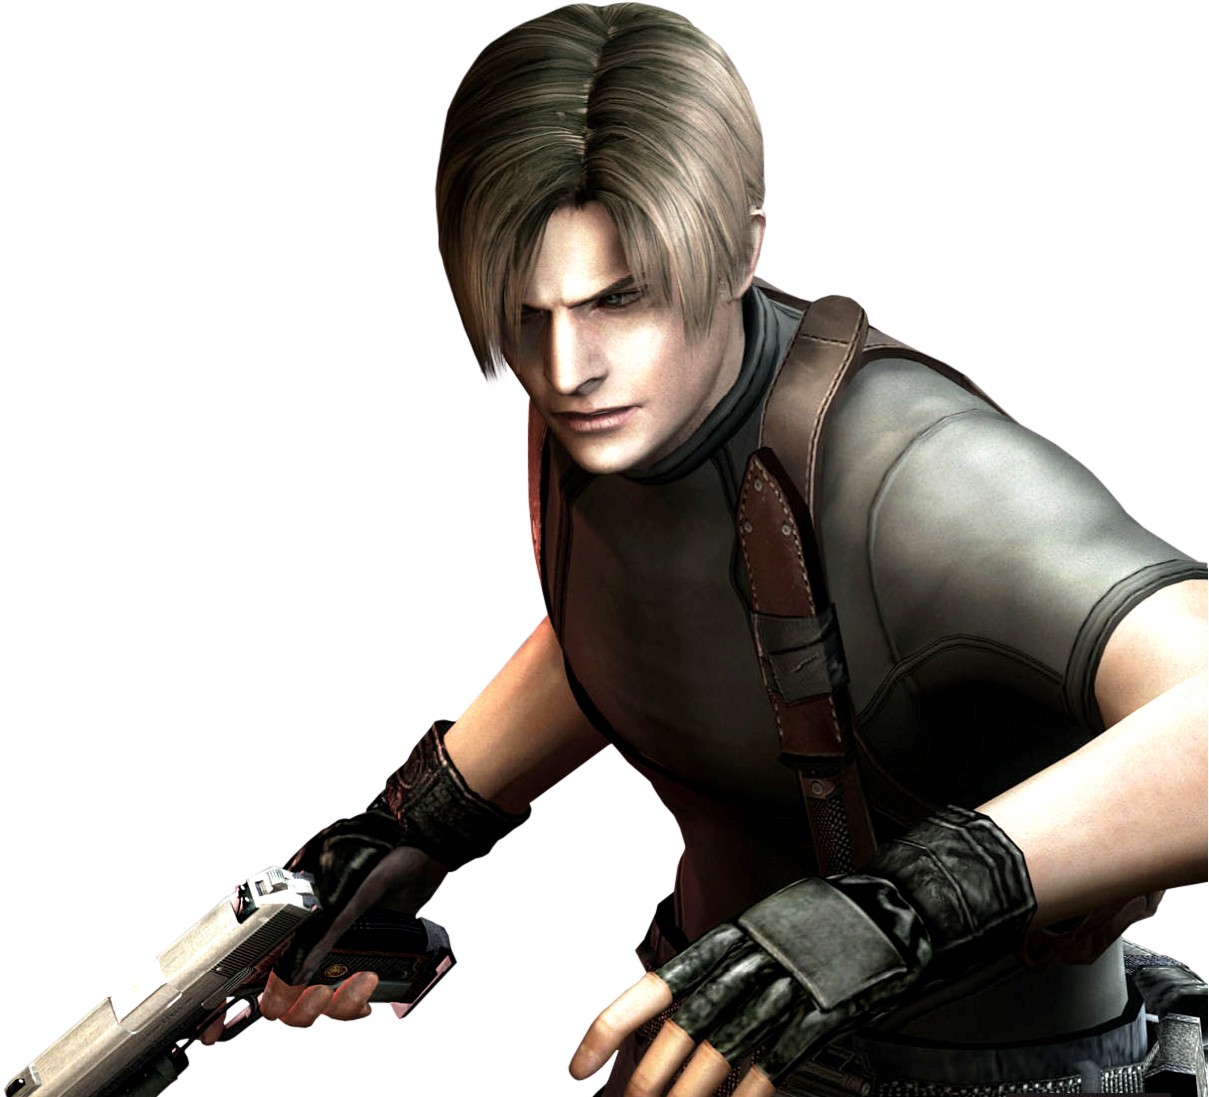 Resident Evil 4 Remake  Animated Wallpaper The Village 4K  YouTube